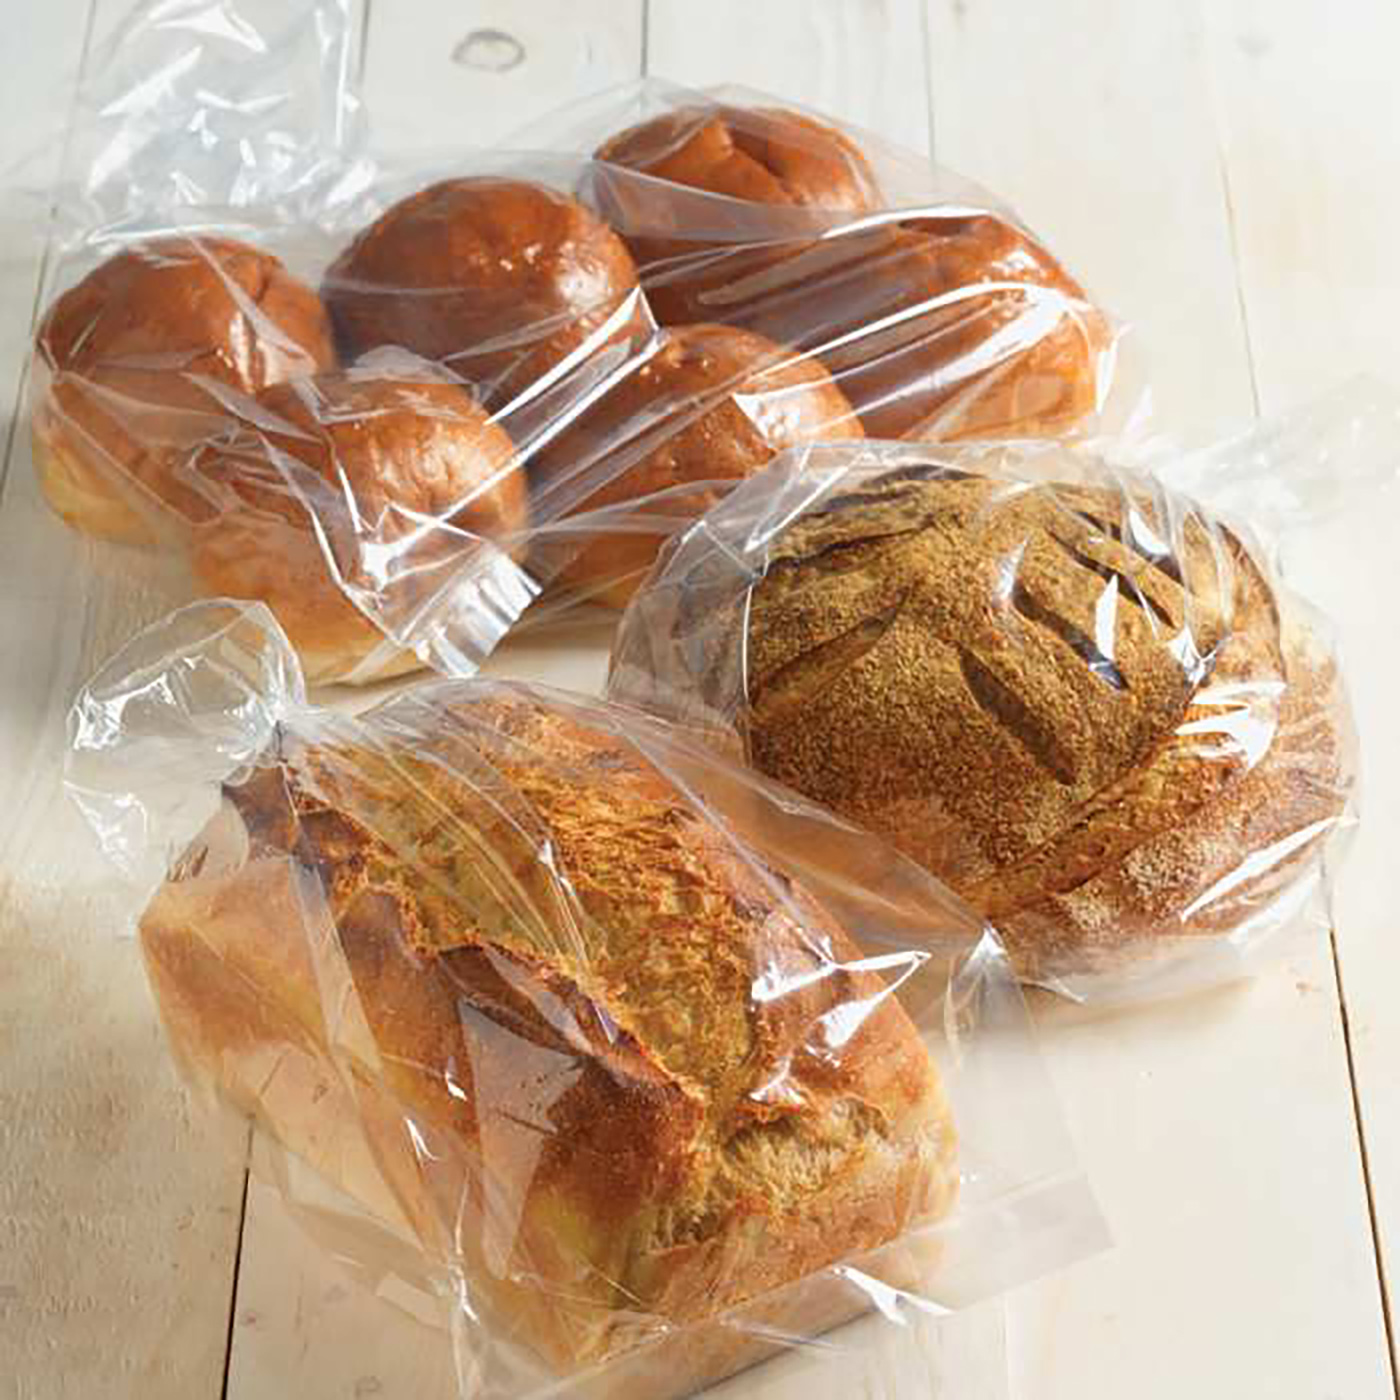 Булочка в упаковке. Упаковка хлебобулочных изделий. Пакеты для упаковки хлеба. Хлеб в полиэтиленовом пакете.